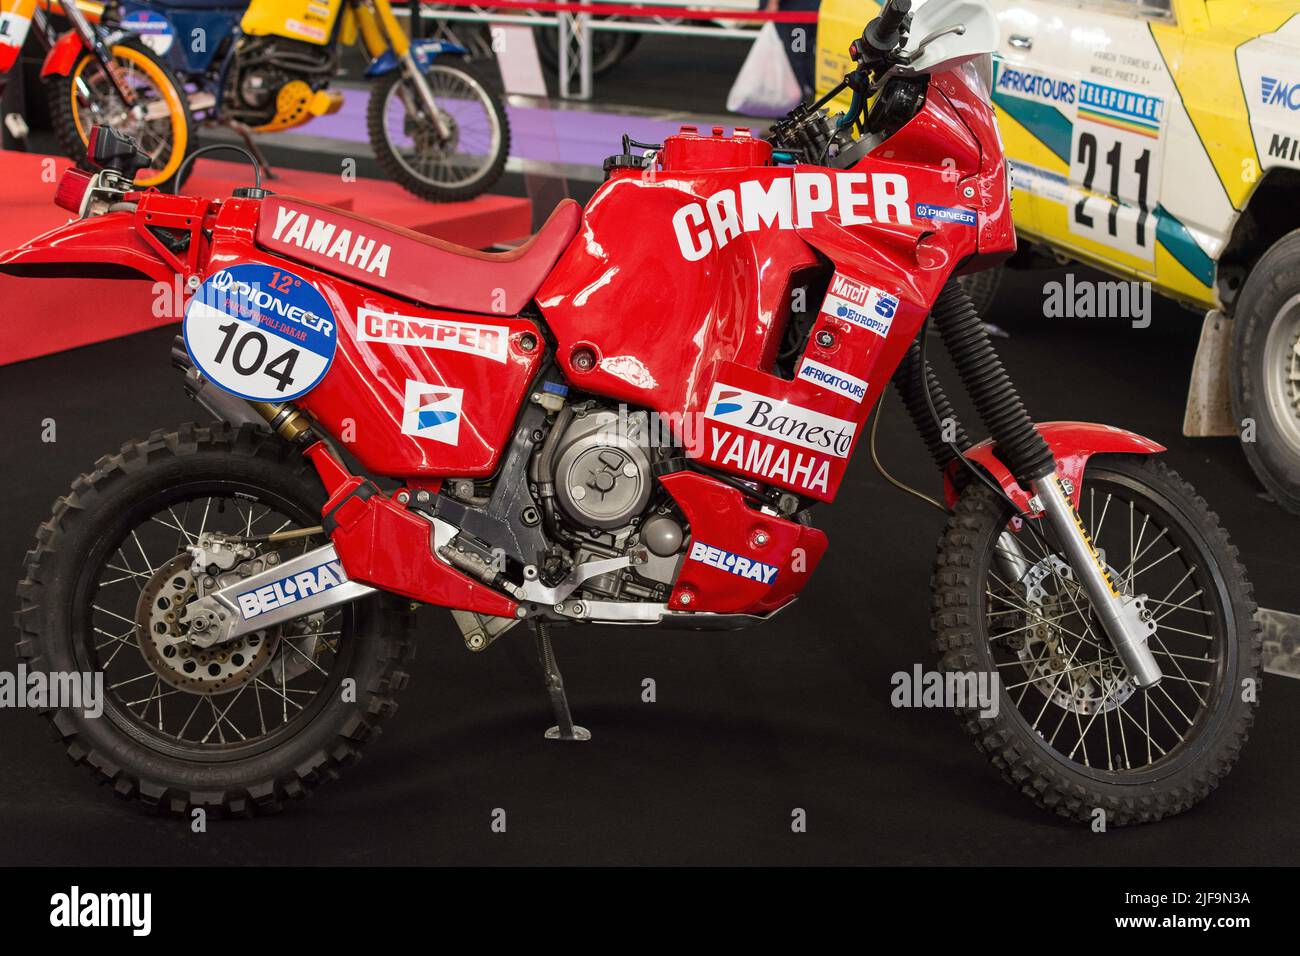 Yamaha 750 Banque de photographies et d'images à haute résolution - Alamy